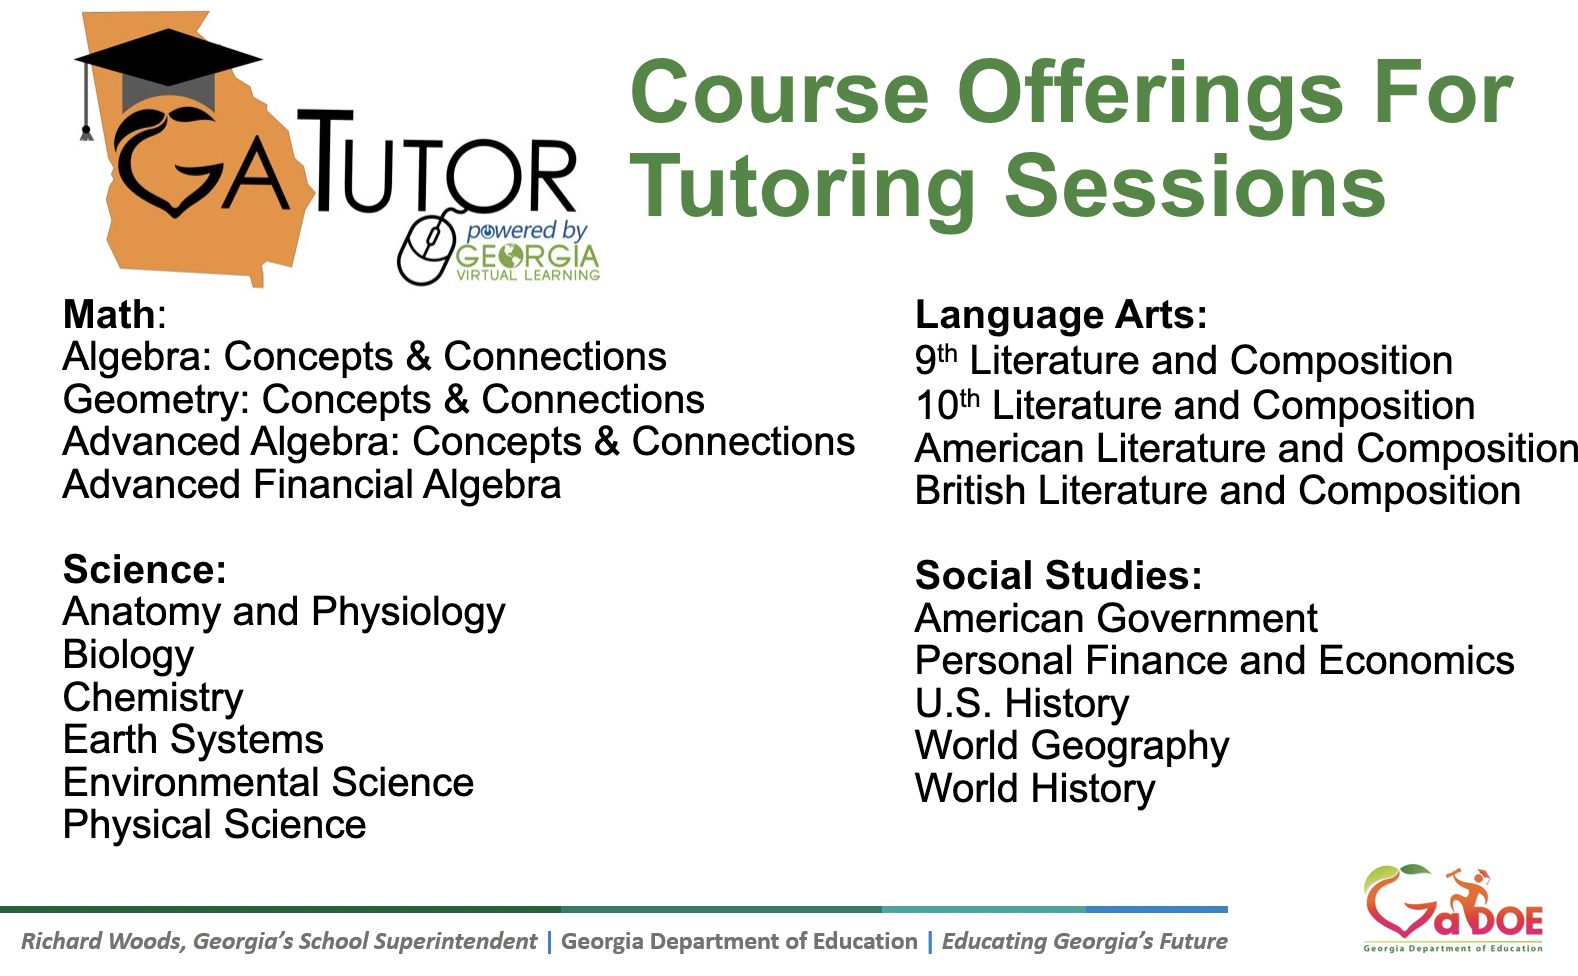 GaTutor Course Offerings